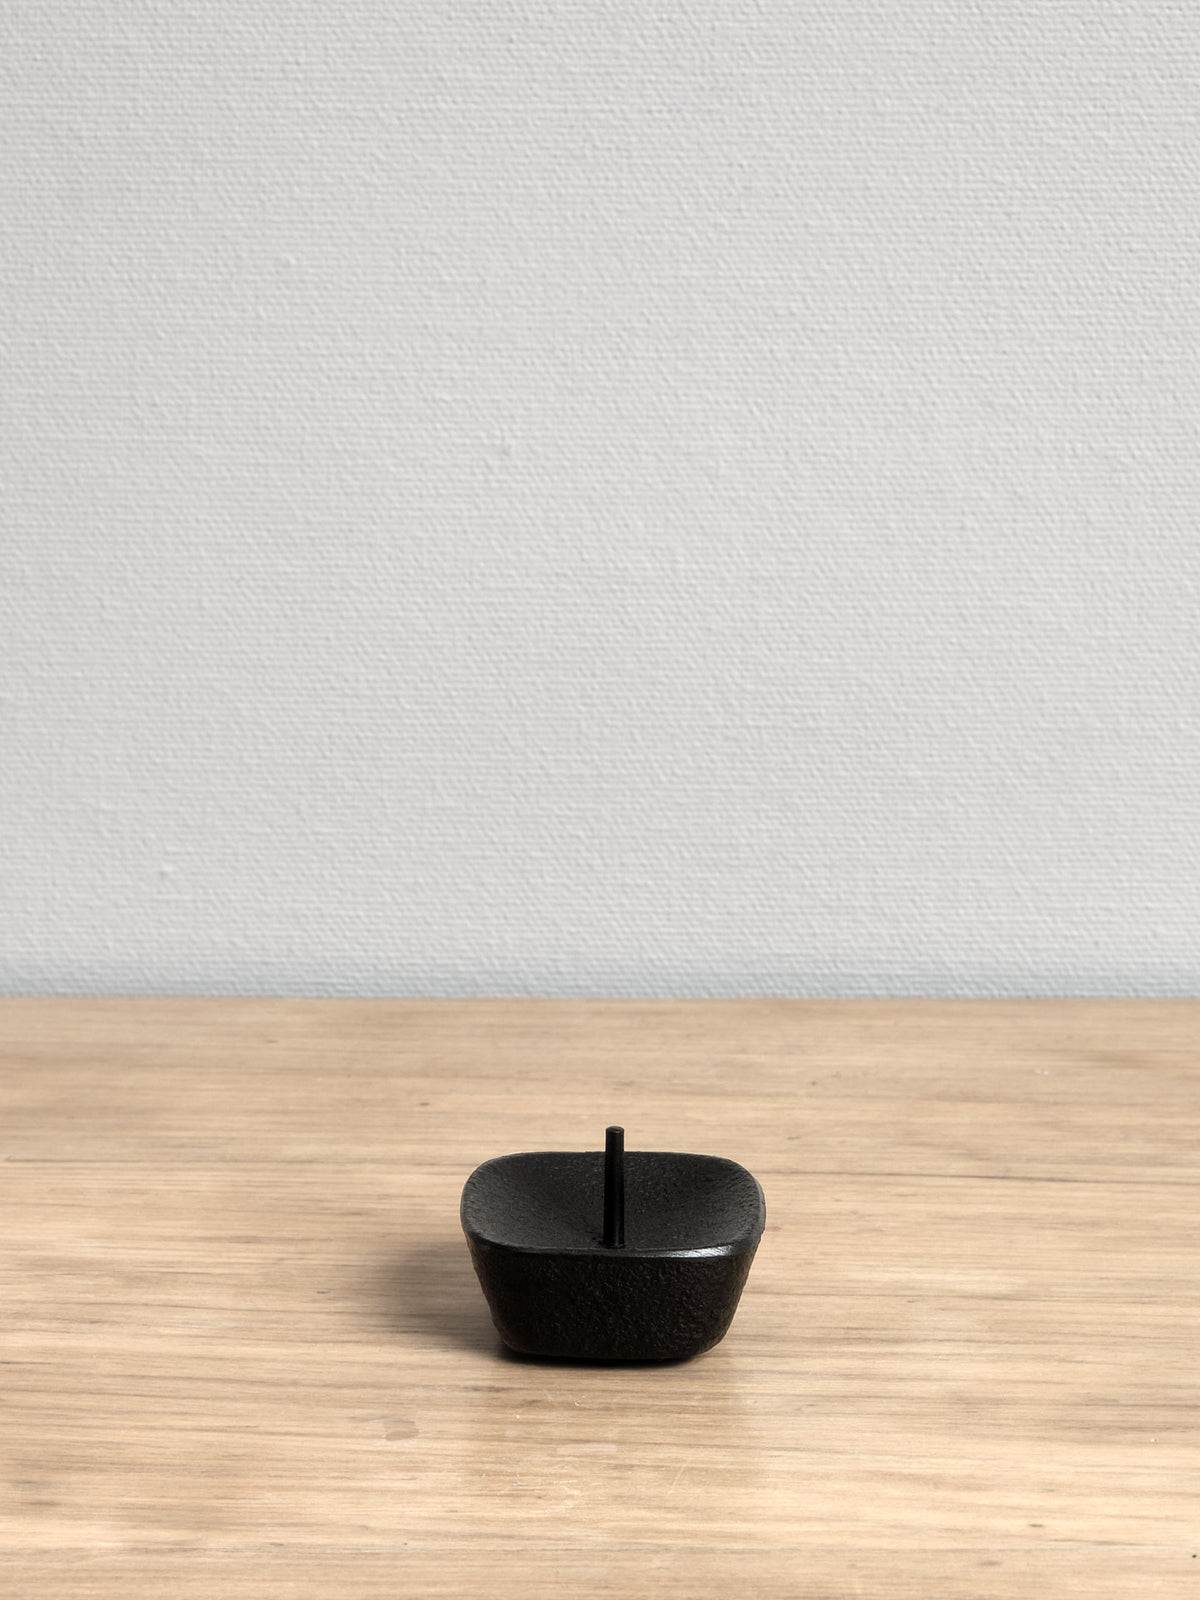 A Takazawa KOMA Iron Candle Stand - Small sitting on a wooden table.